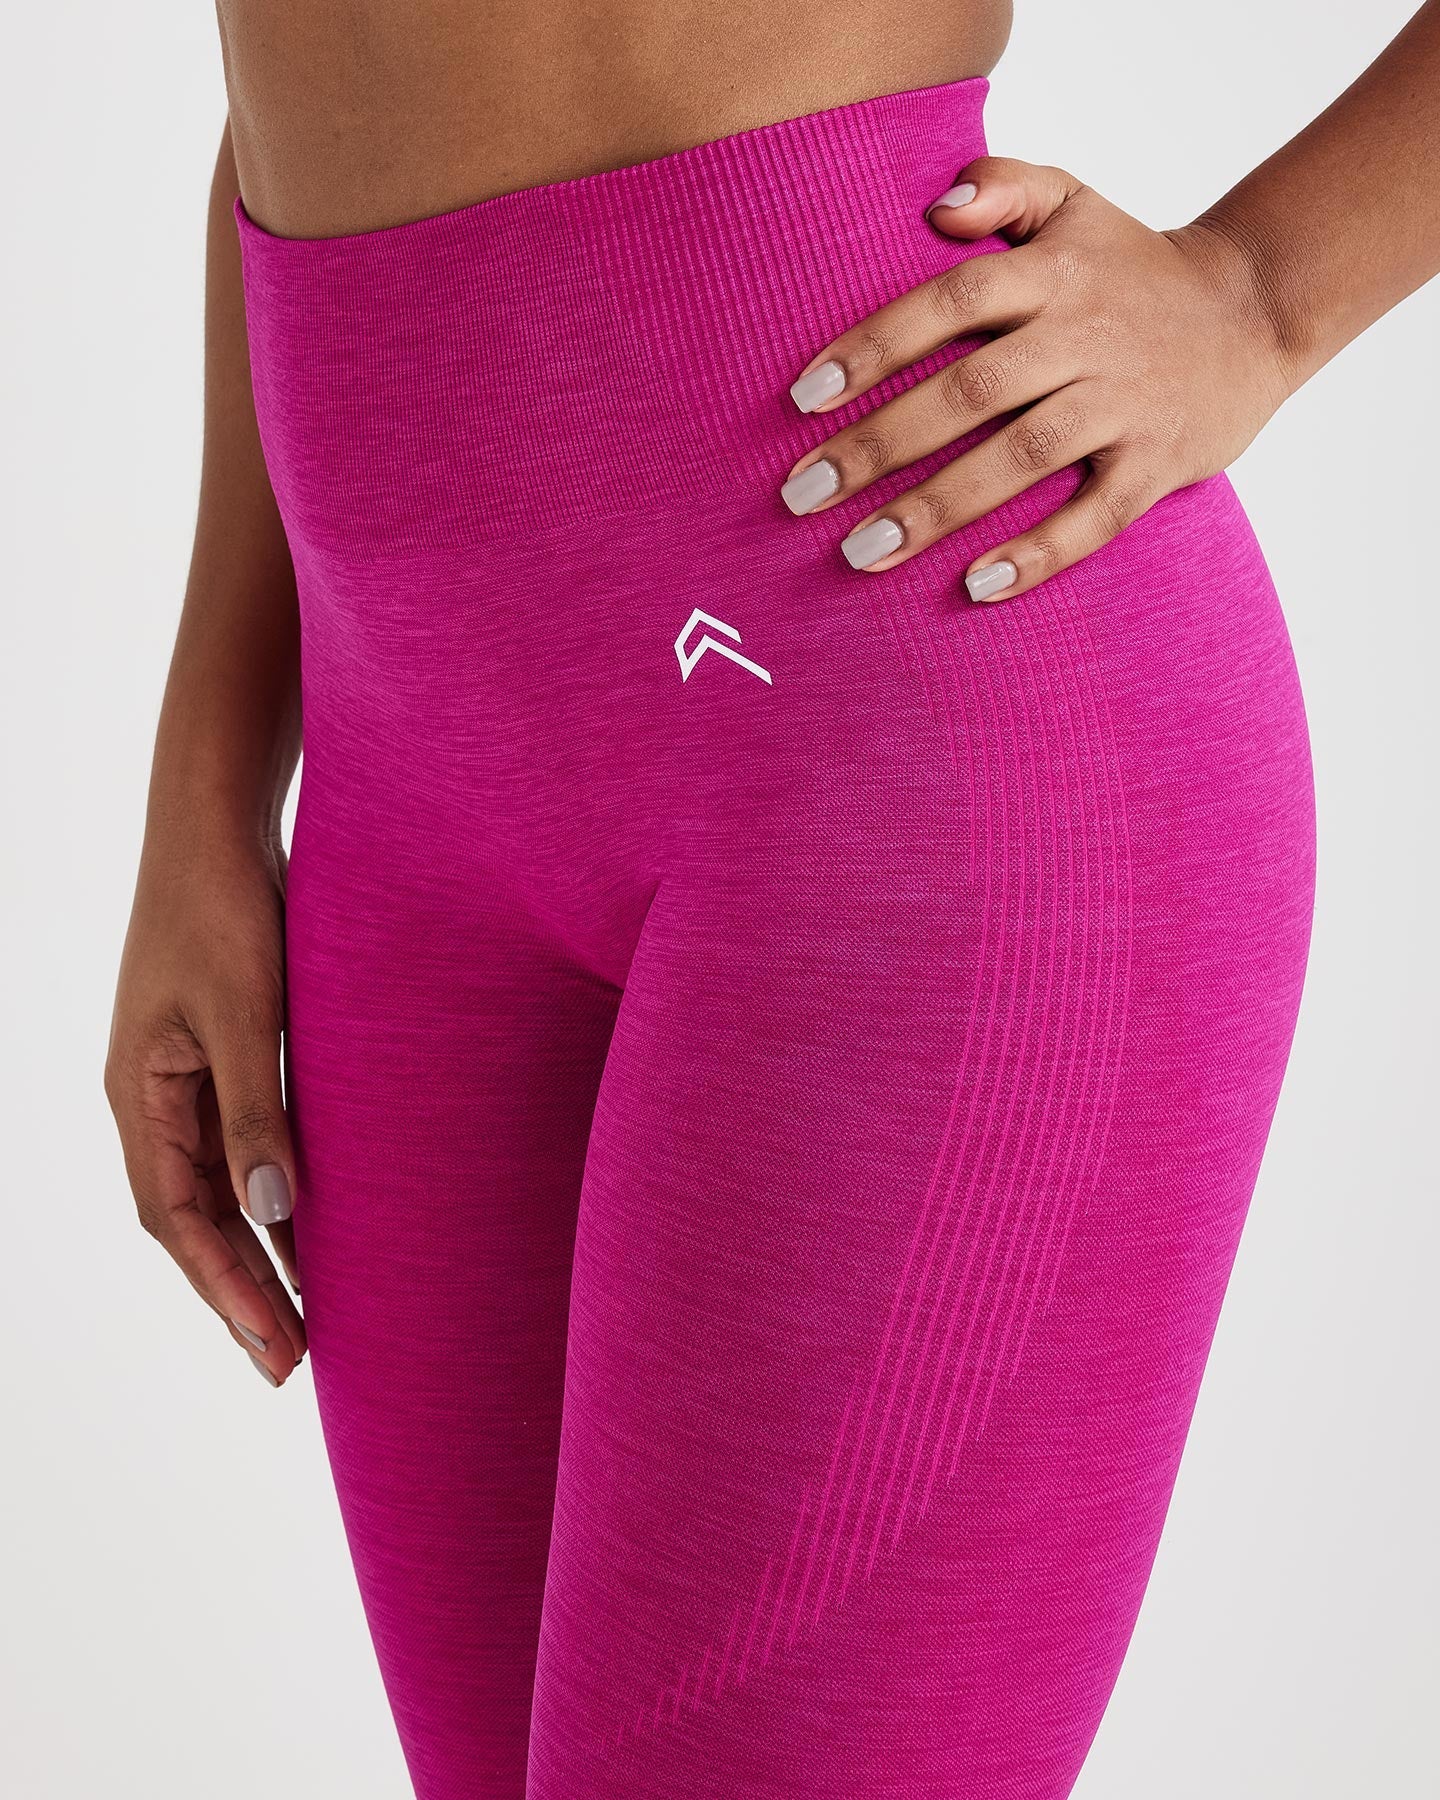 Victoria Secret PINK Seamless Workout Tight High Waist Leggings Cinnibar  Size S